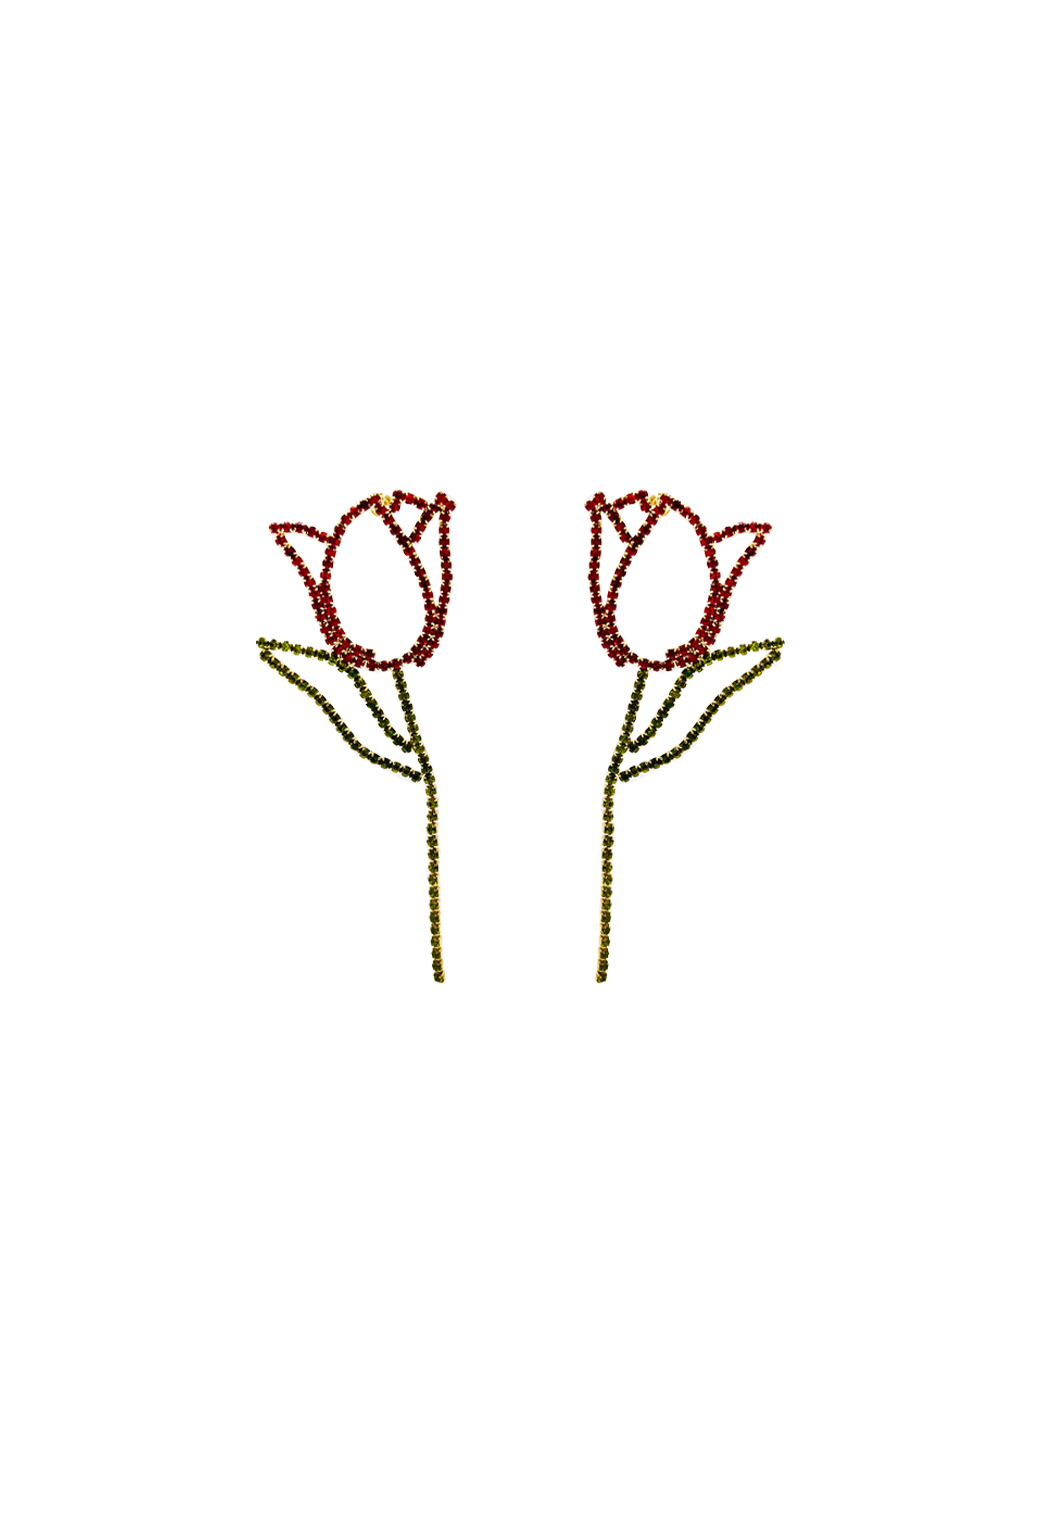 Rhinestone Tulips - Red